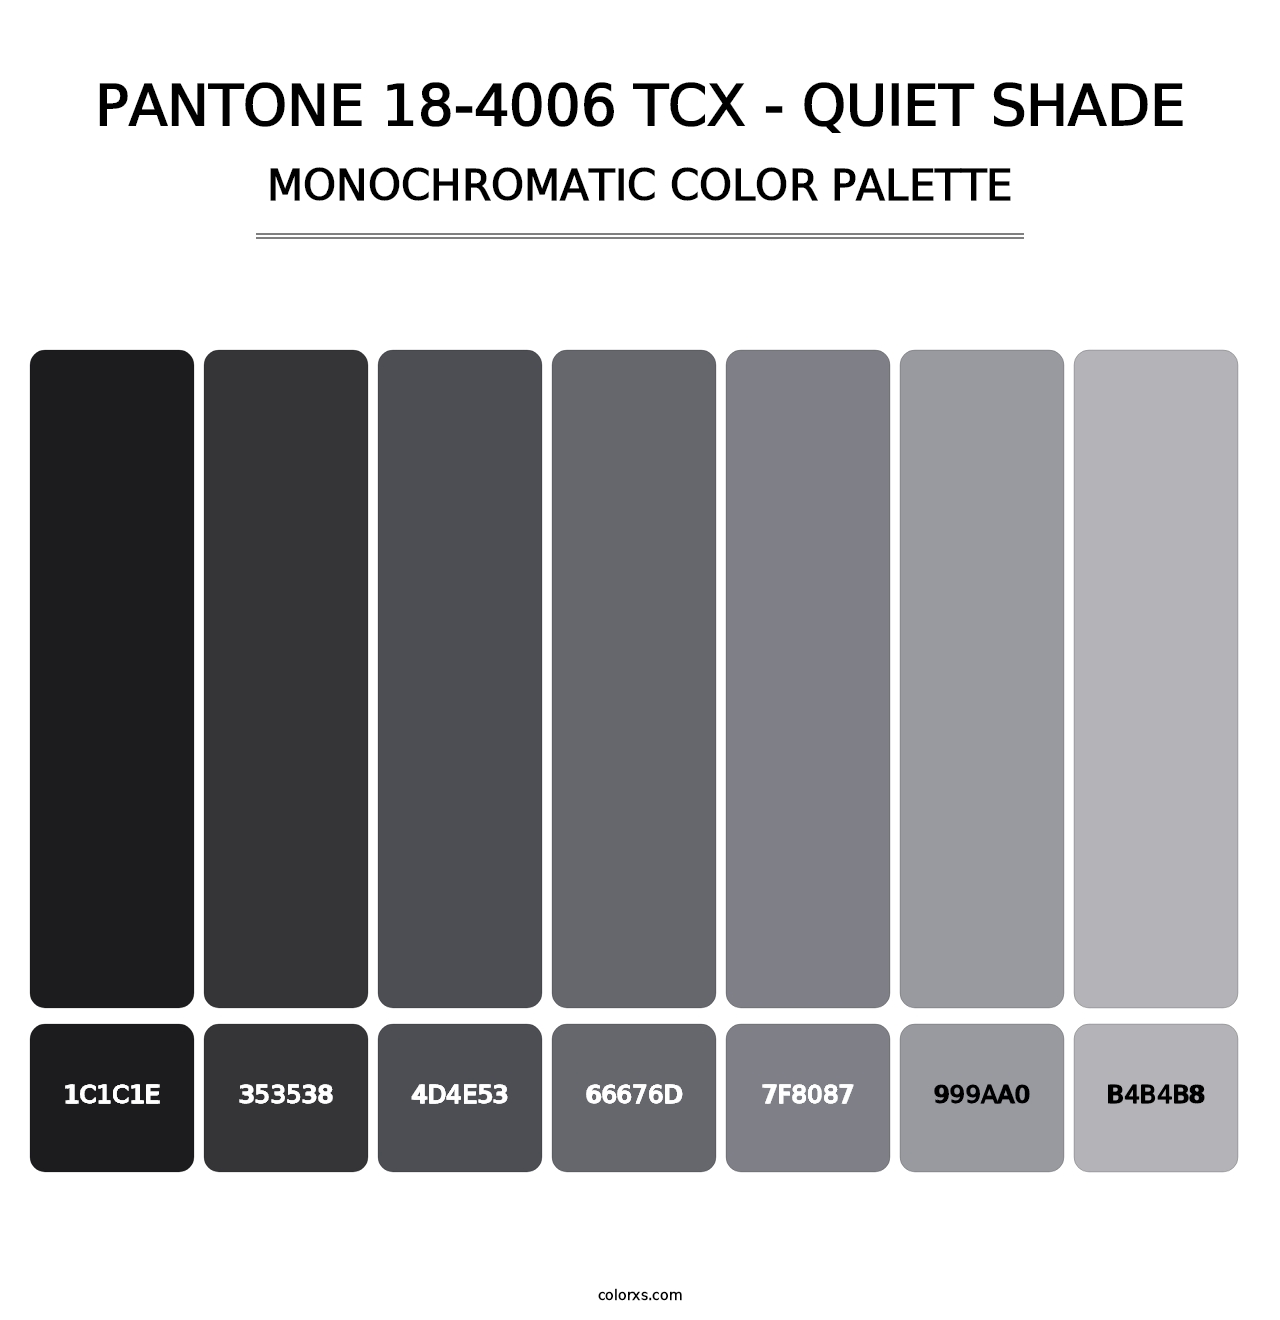 PANTONE 18-4006 TCX - Quiet Shade - Monochromatic Color Palette